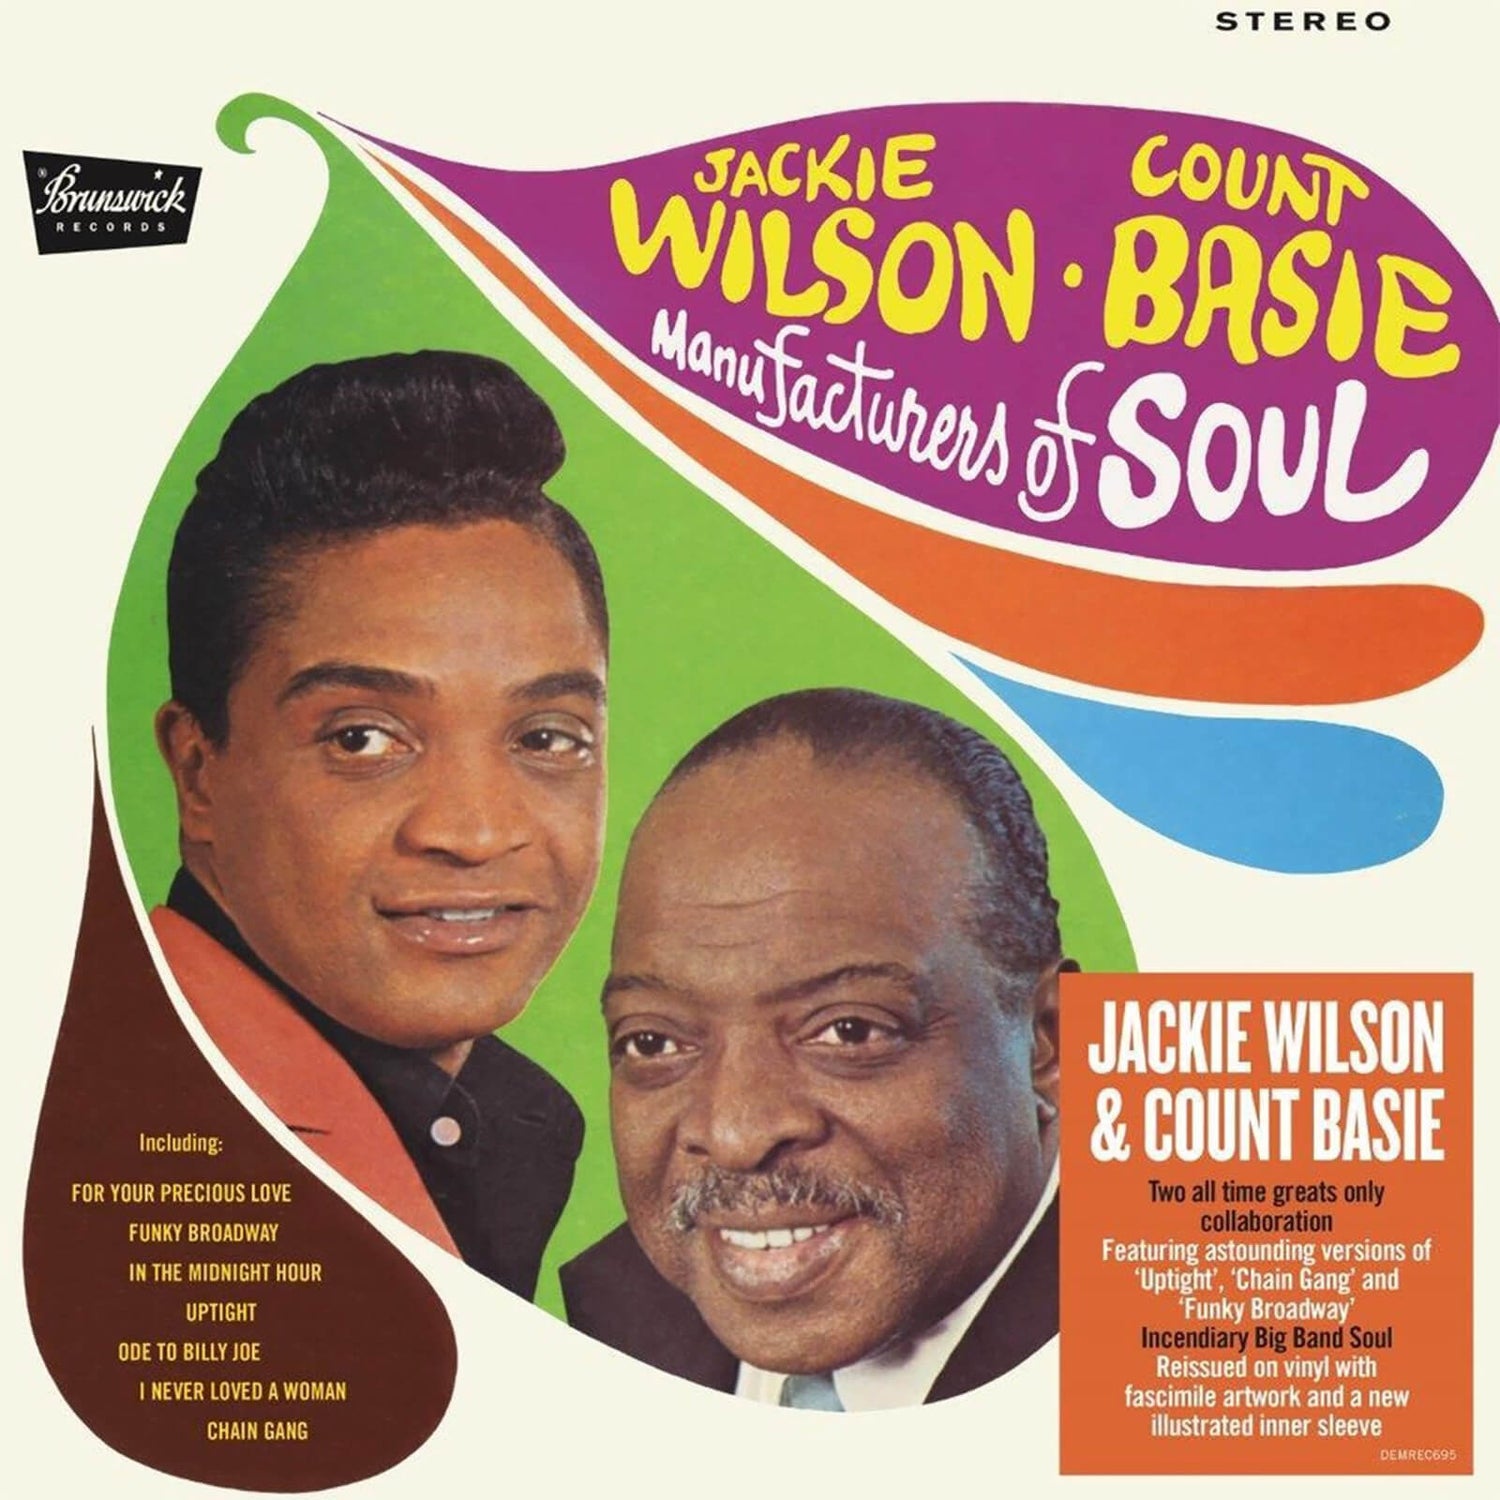 Jackie Wilson & Count Basie - Manufacturers Of Soul Vinyl